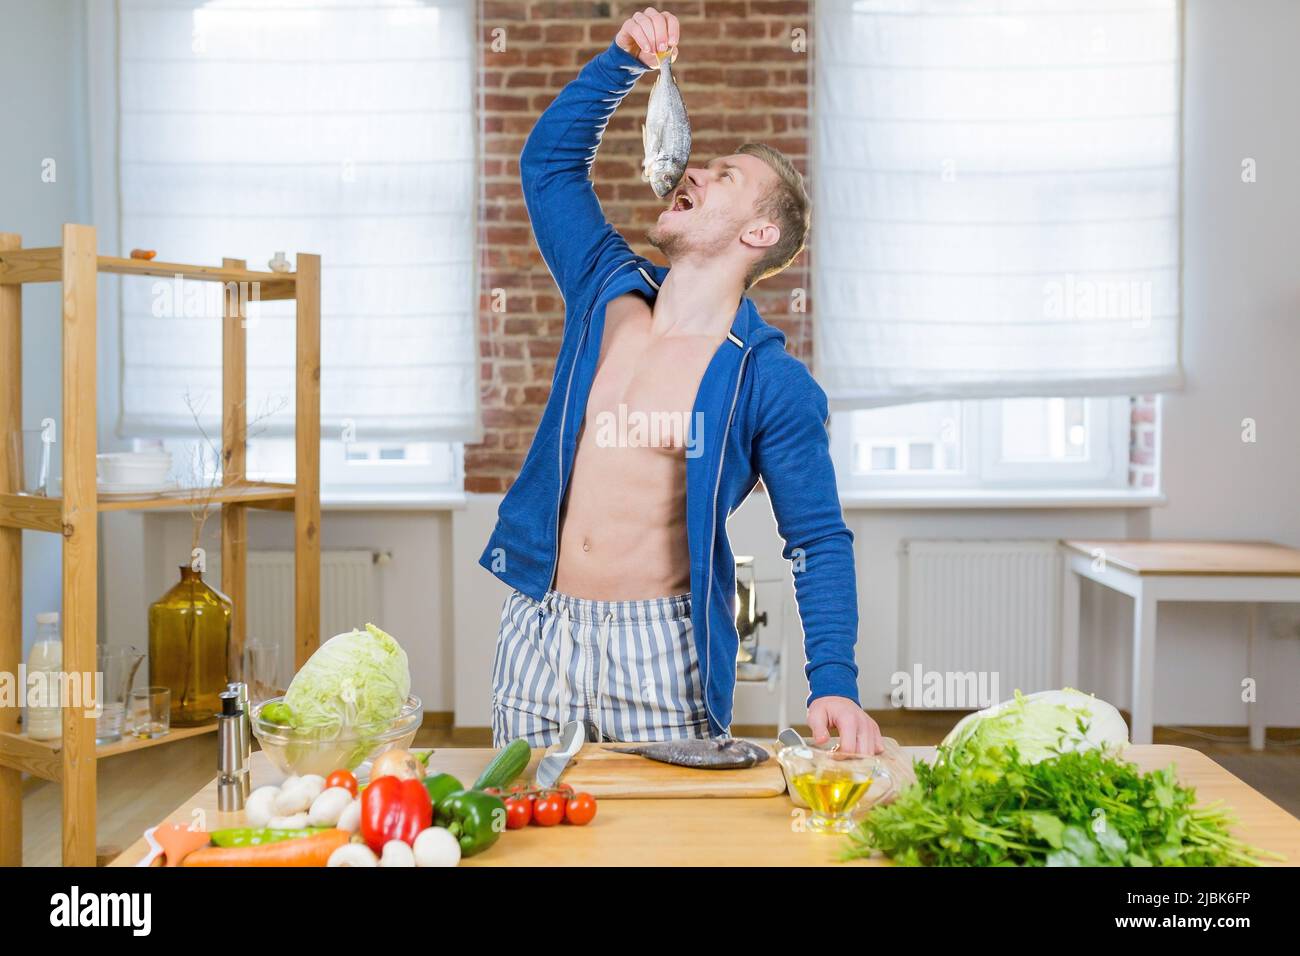 Ritratto di giovane bell'uomo atletico imparare a cucinare il pesce con verdure fresche online con il portatile in cucina a casa, guardando la macchina fotografica, sorridente Foto Stock